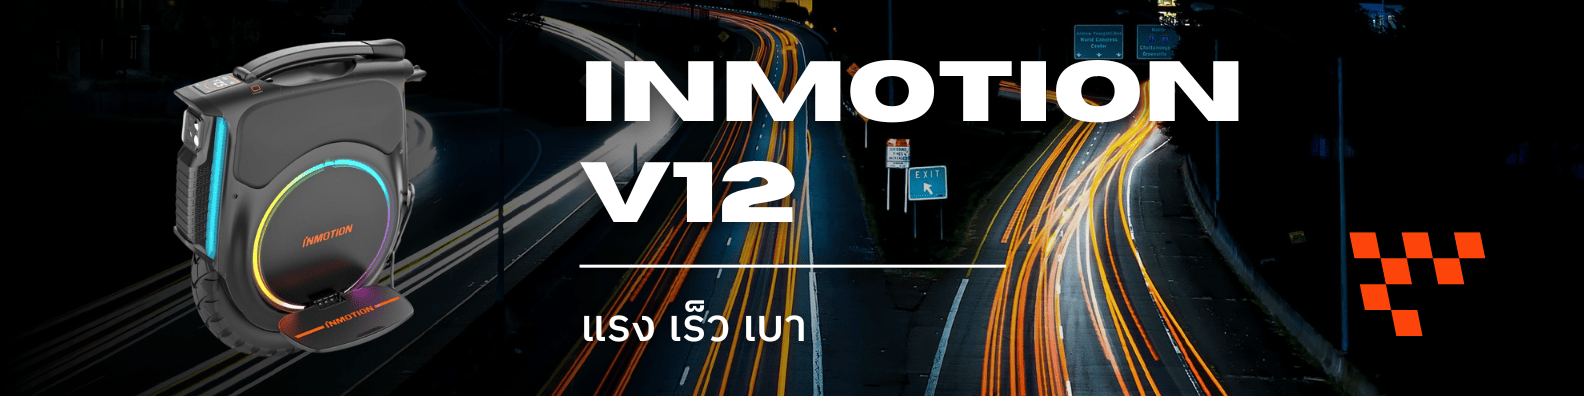 Inmotion V12